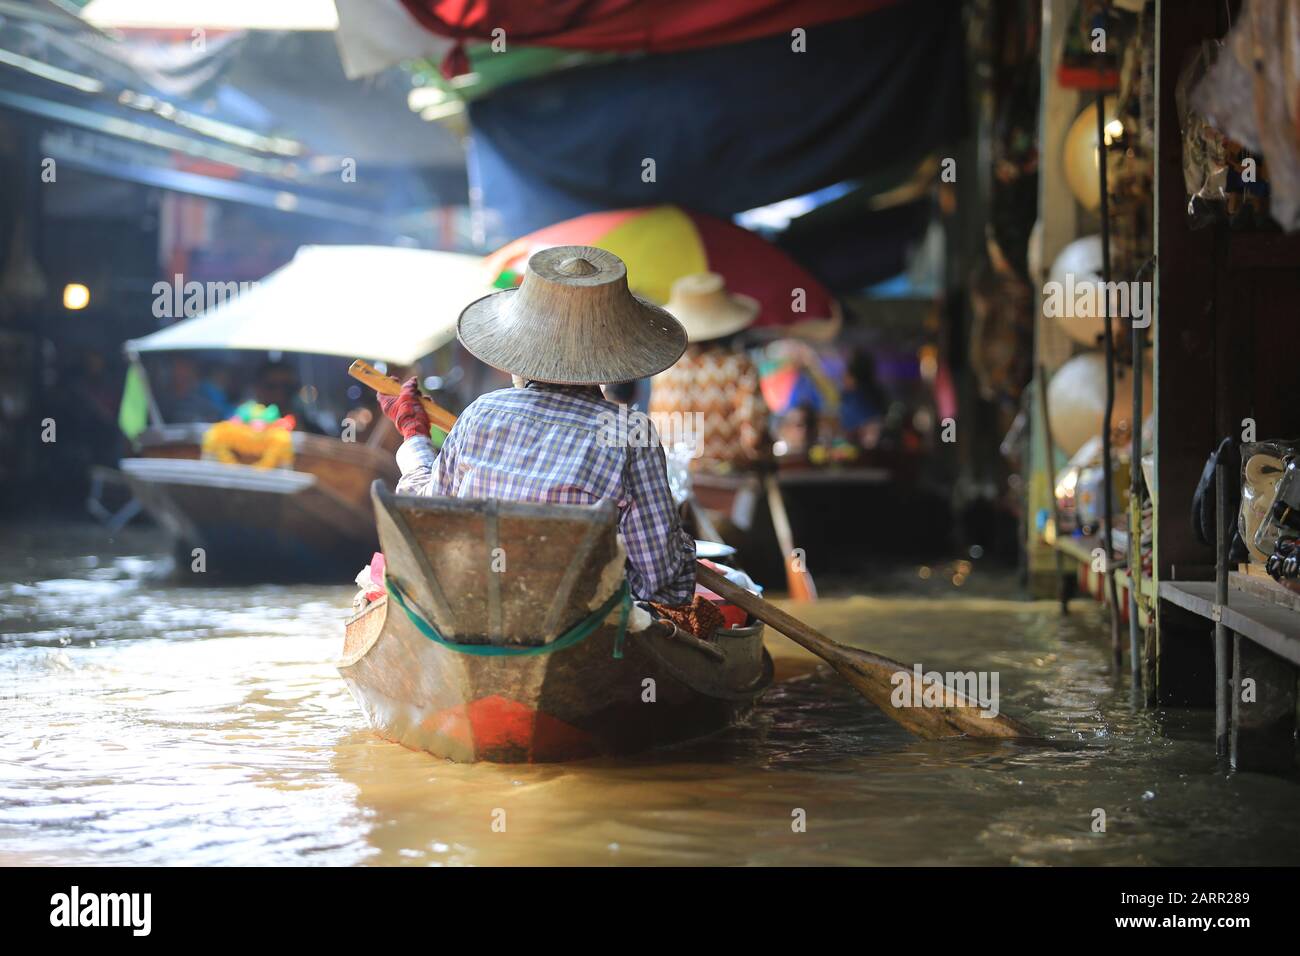 Bangkok/Thailandia - 29 dicembre 2019: Il fornitore locale vende il prodotto sul fiume nel mercato galleggiante di Damnoen Saduak. Il mercato galleggiante è uno di vista Foto Stock